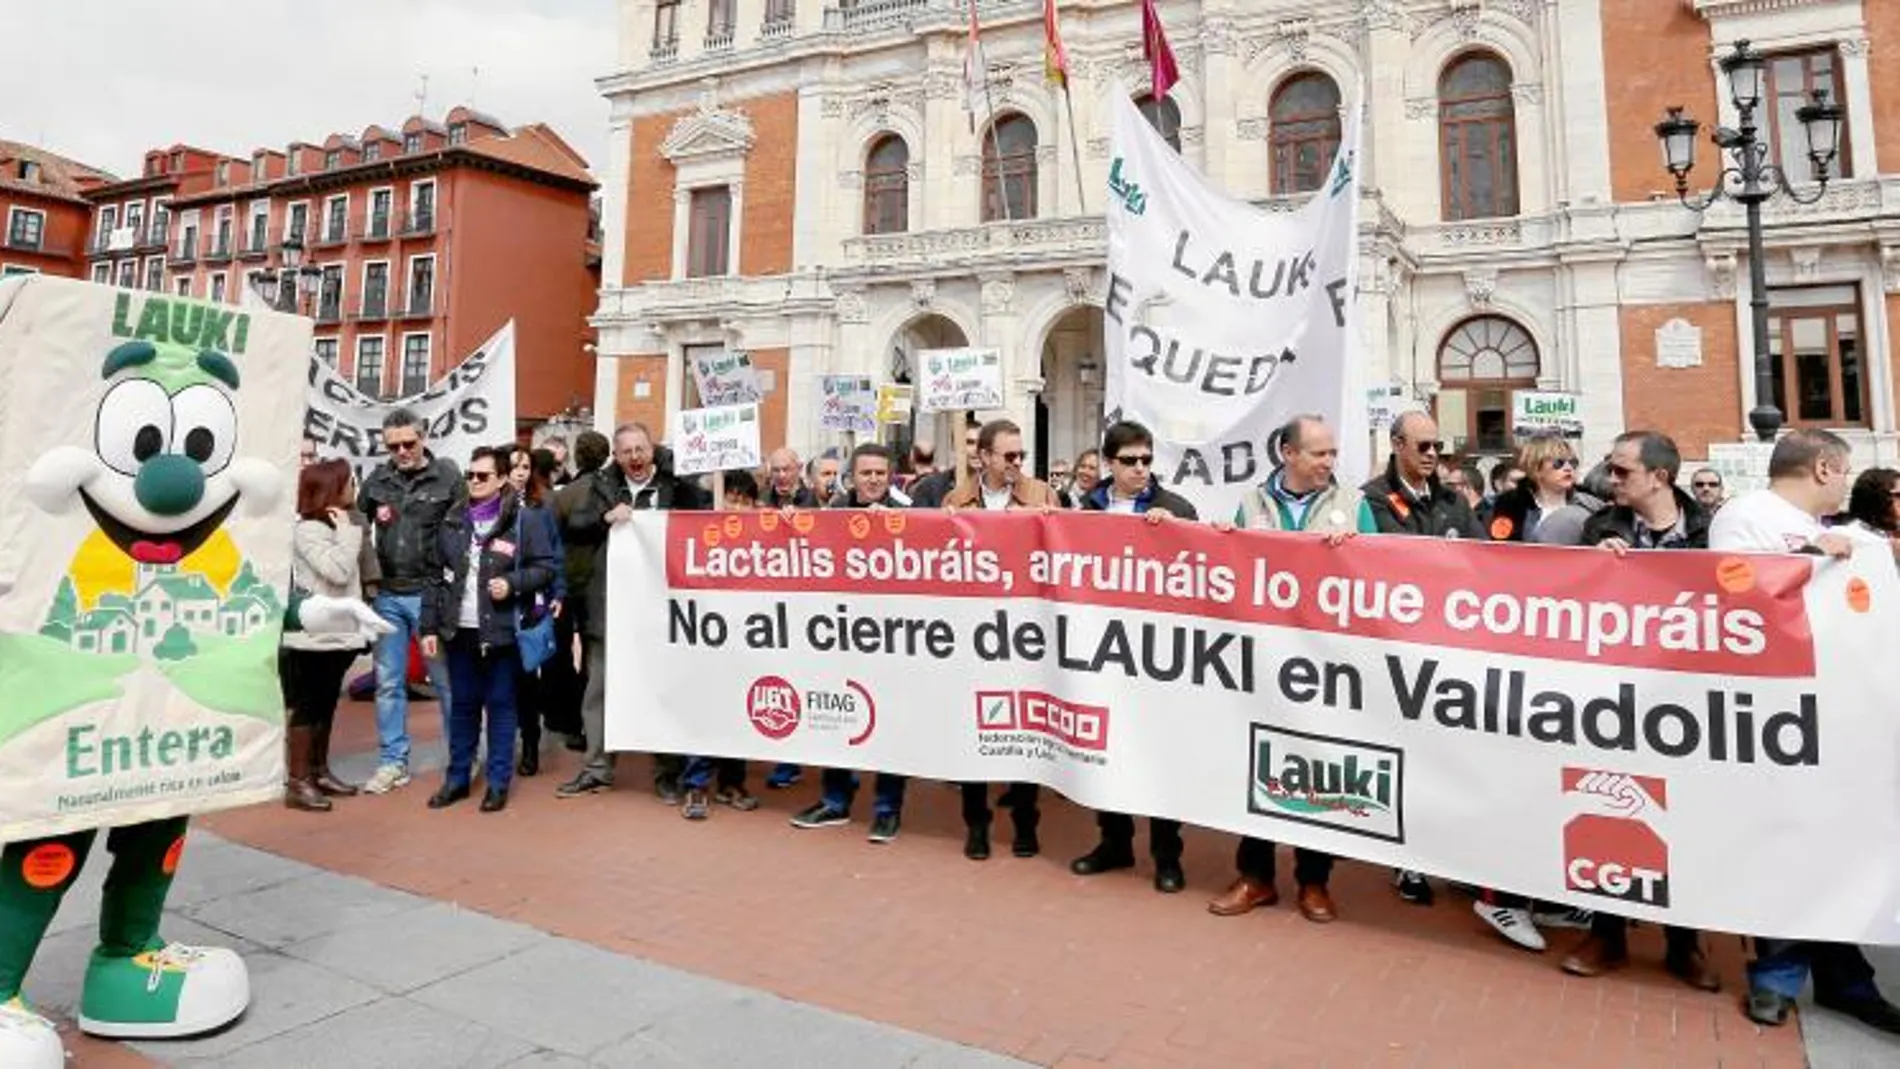 La plaza Mayor de Valladolid acogió un acto reivindicativo de los trabajadores de Lauki y simpatizantes